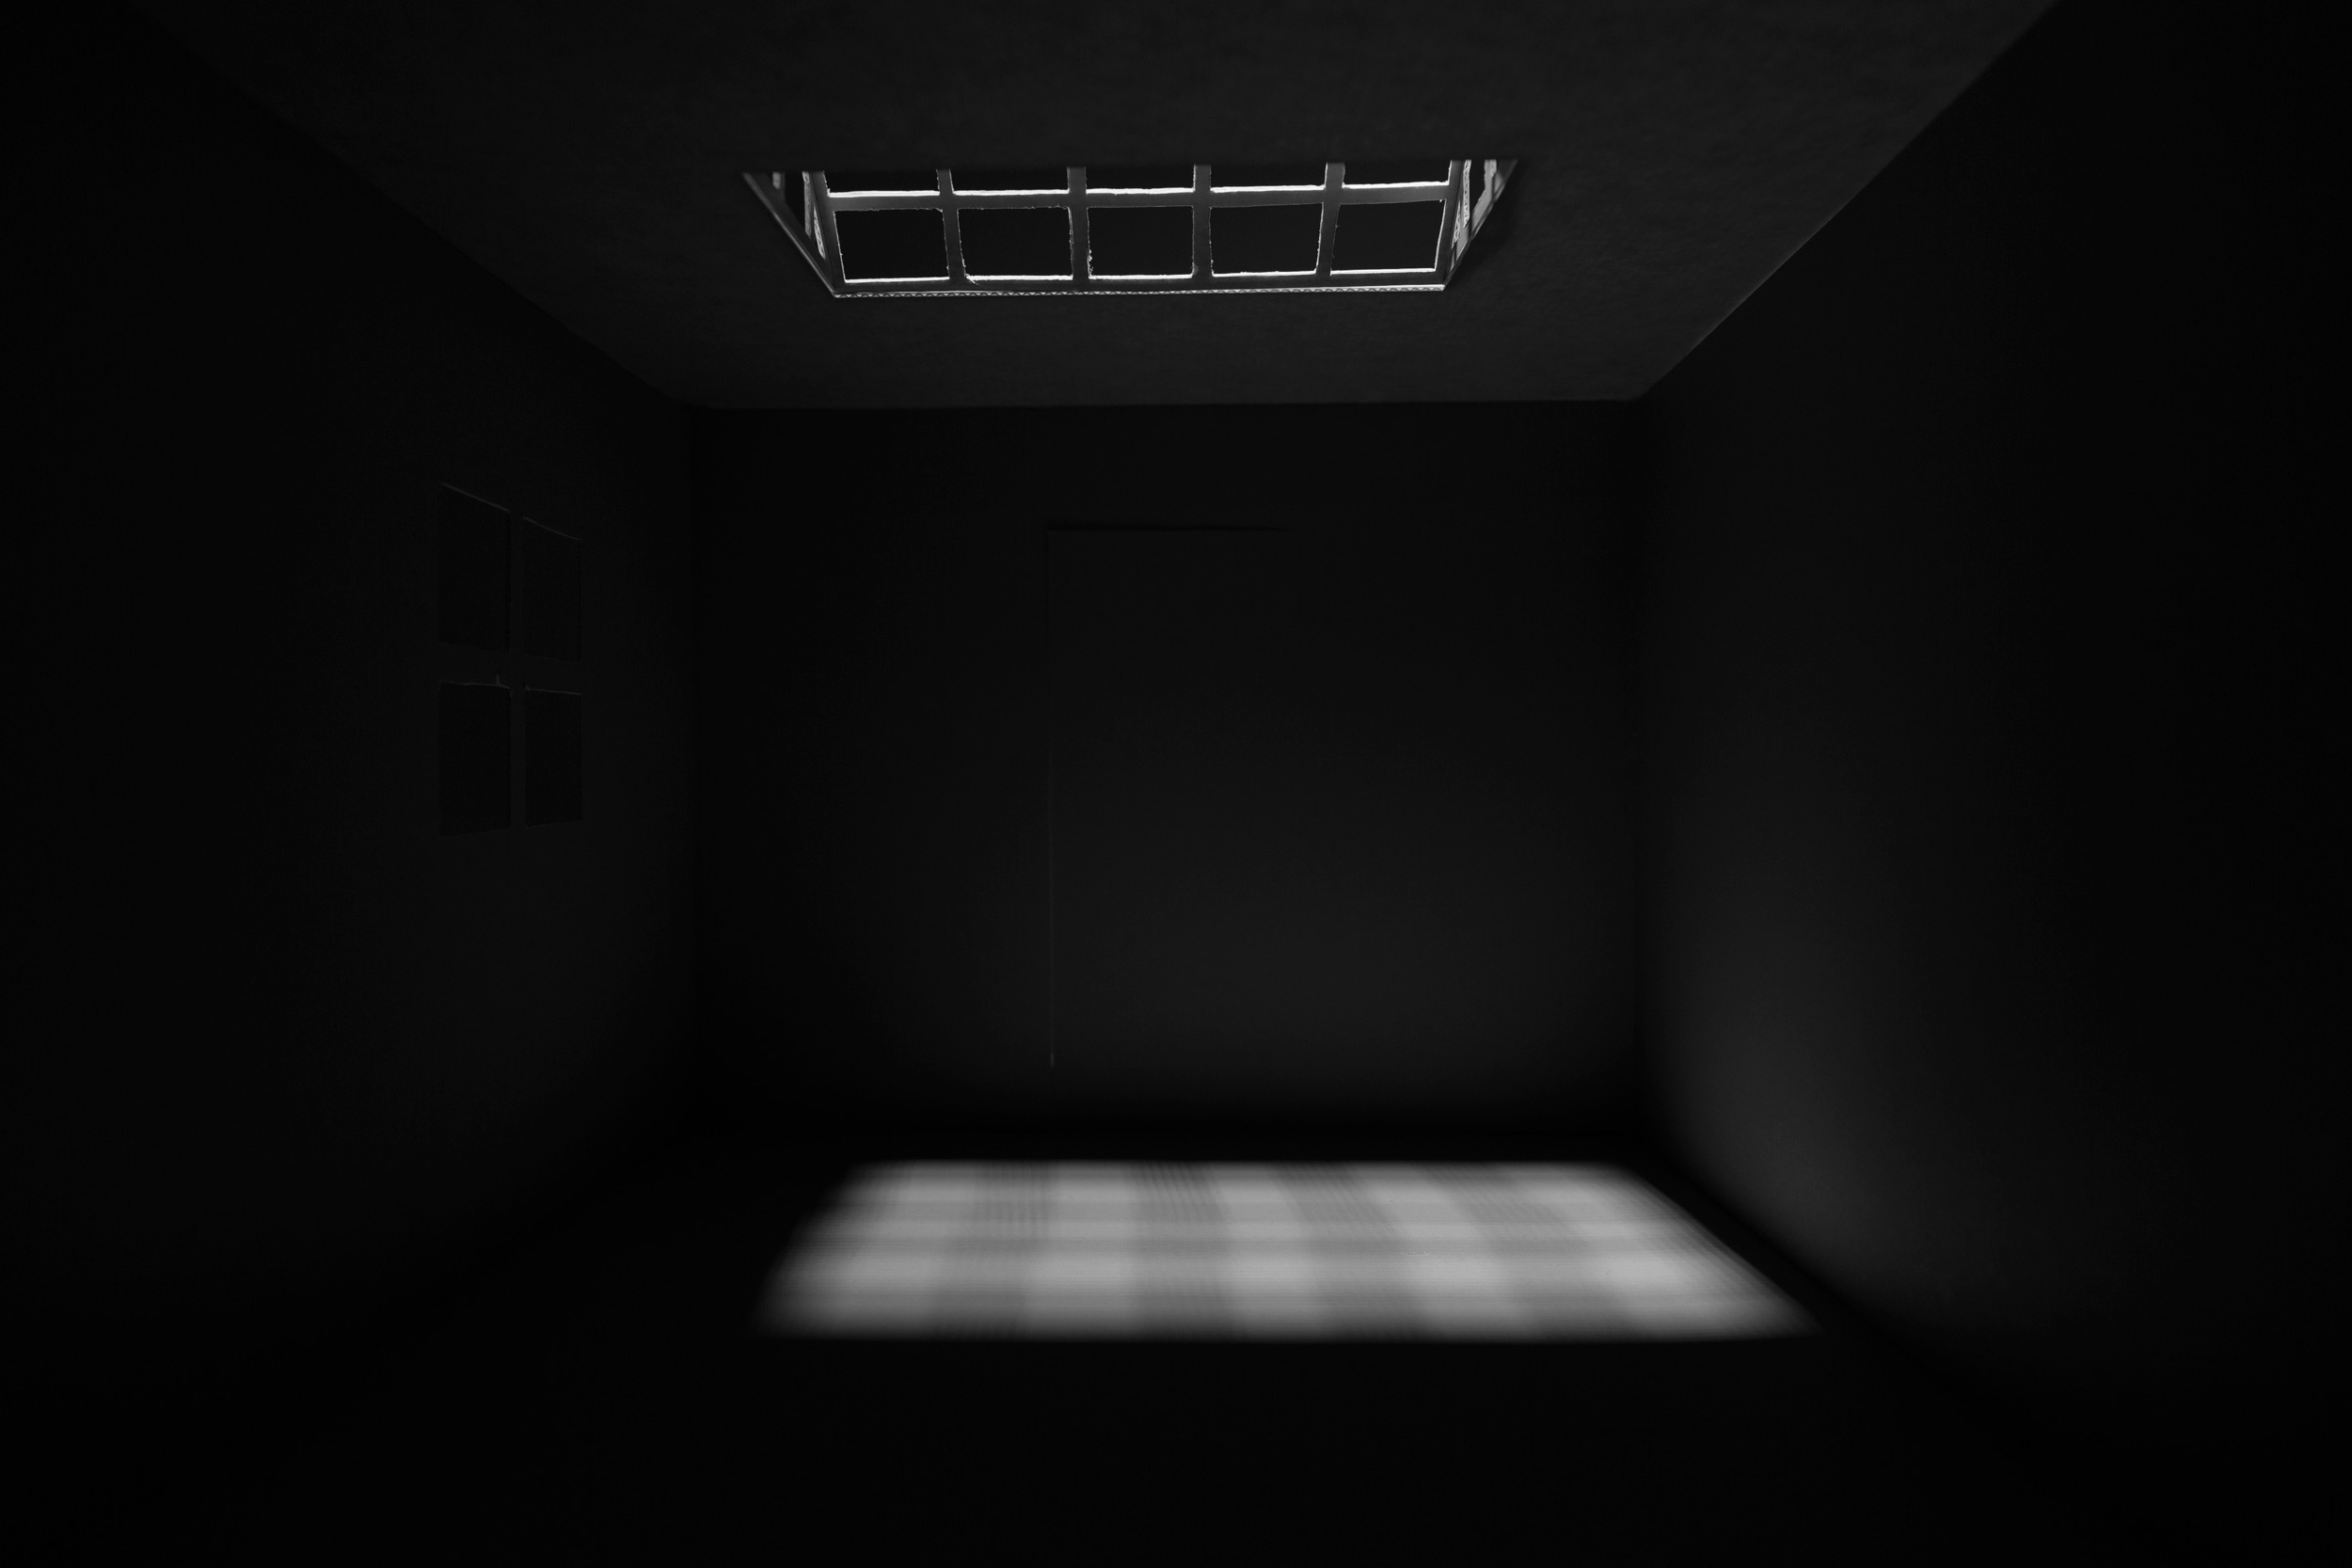 Raum und Licht (Dachfensterlicht)